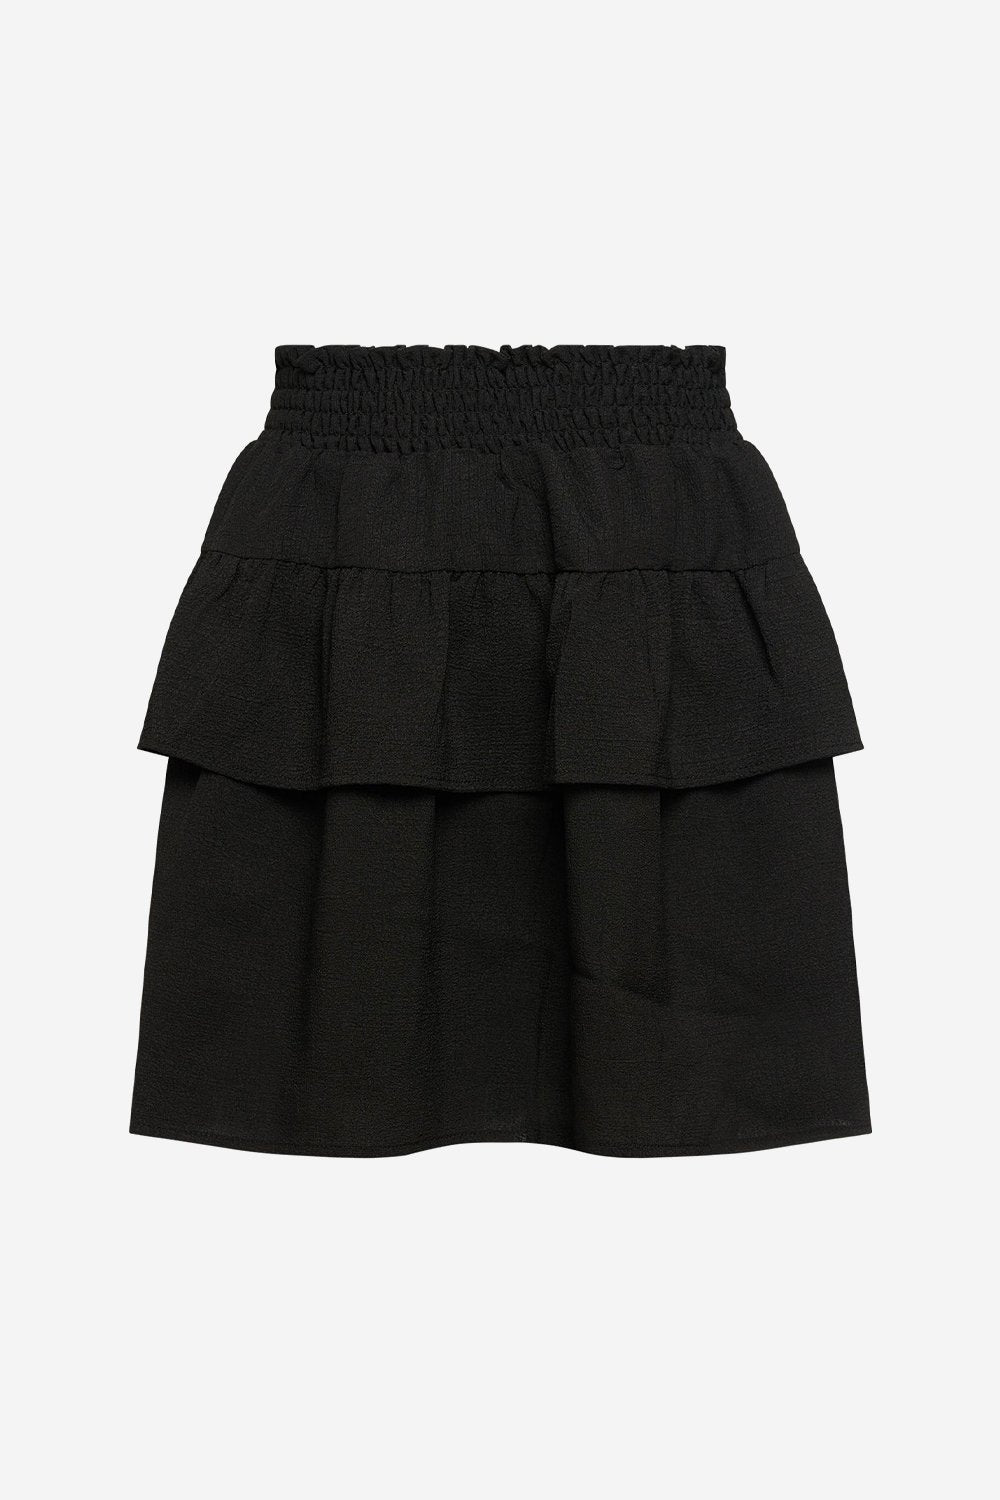 Zuez Skirt Black